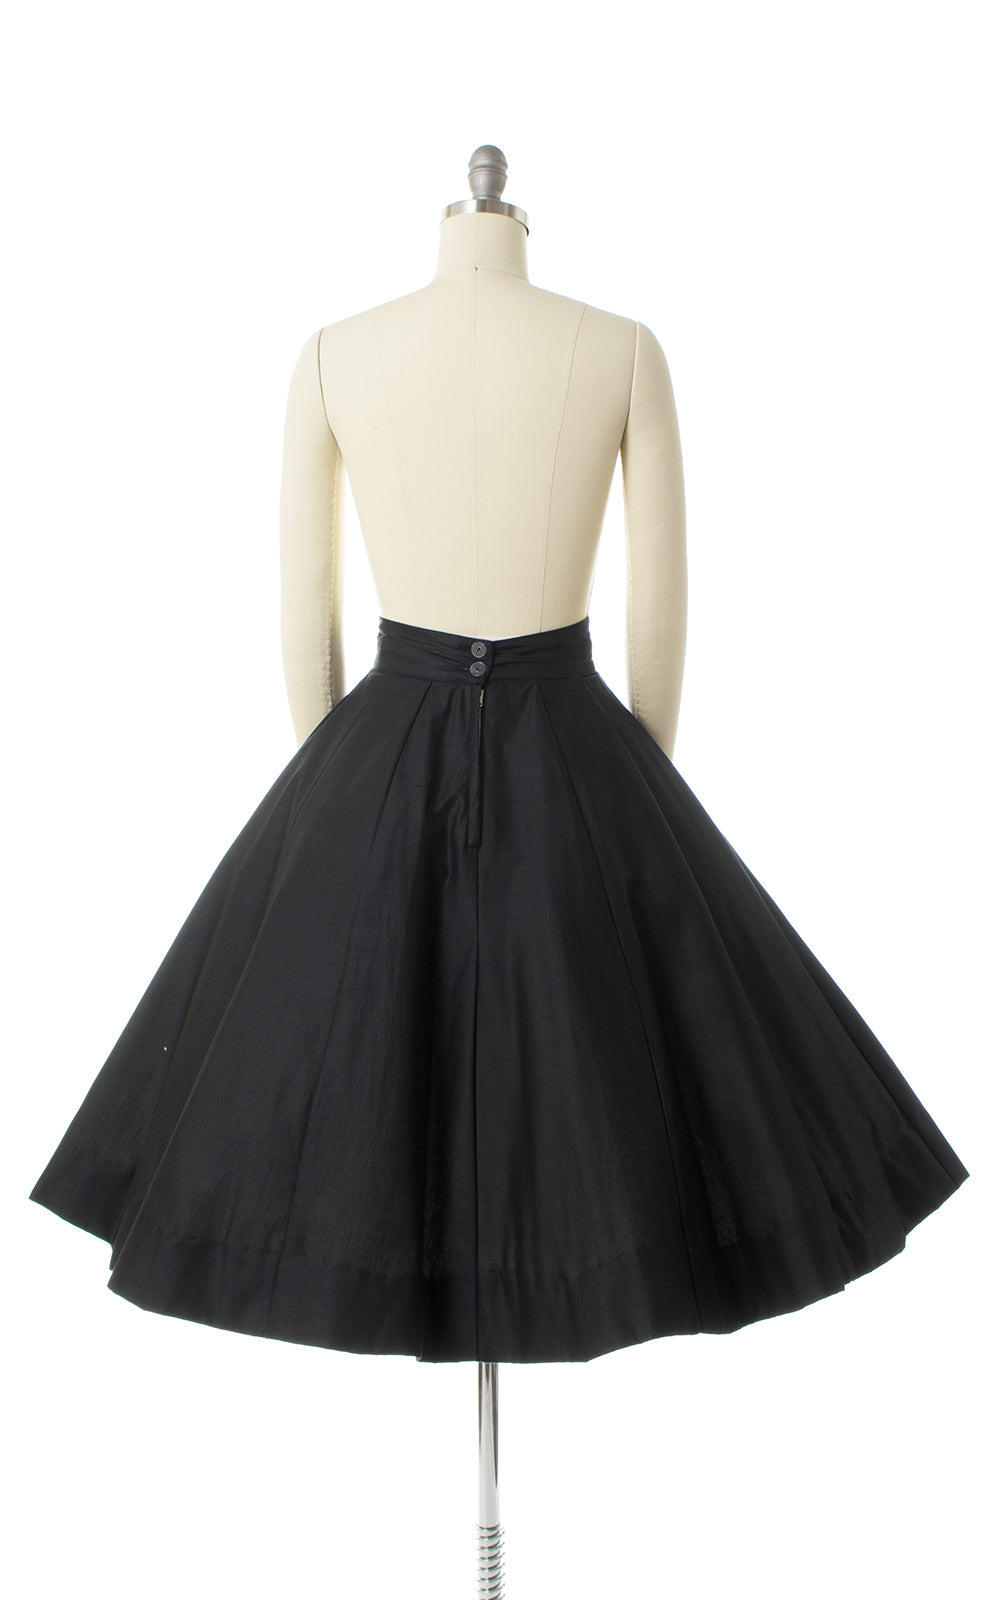 1950s Black Cotton Wide Waistband Skirt